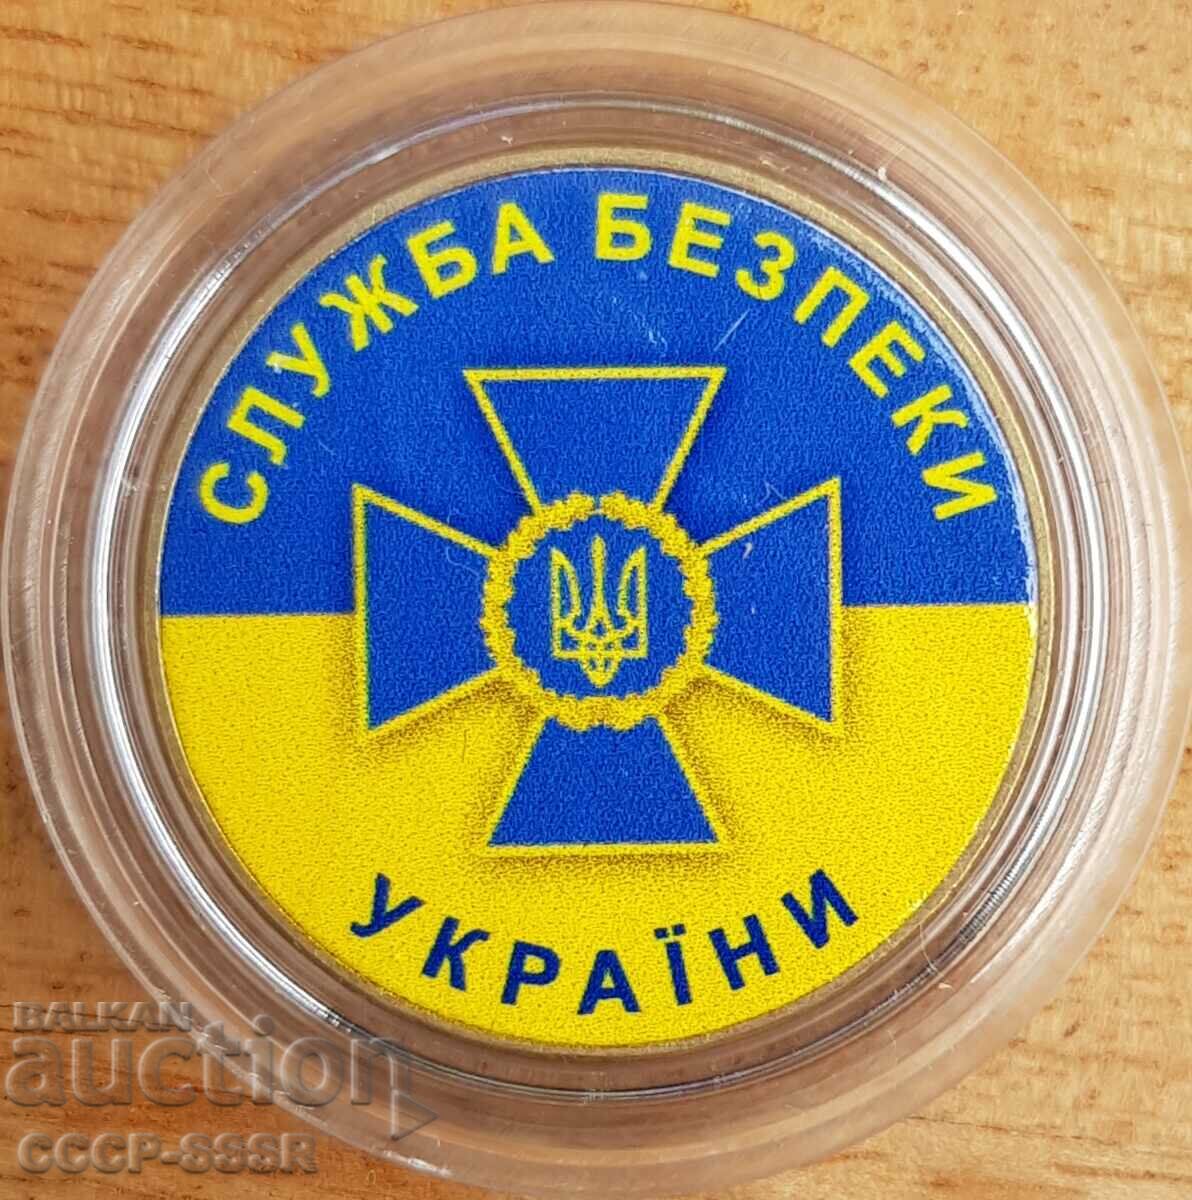 Украйна 1 гр, СБУ Украйни (държавна сигурност), огранич емис